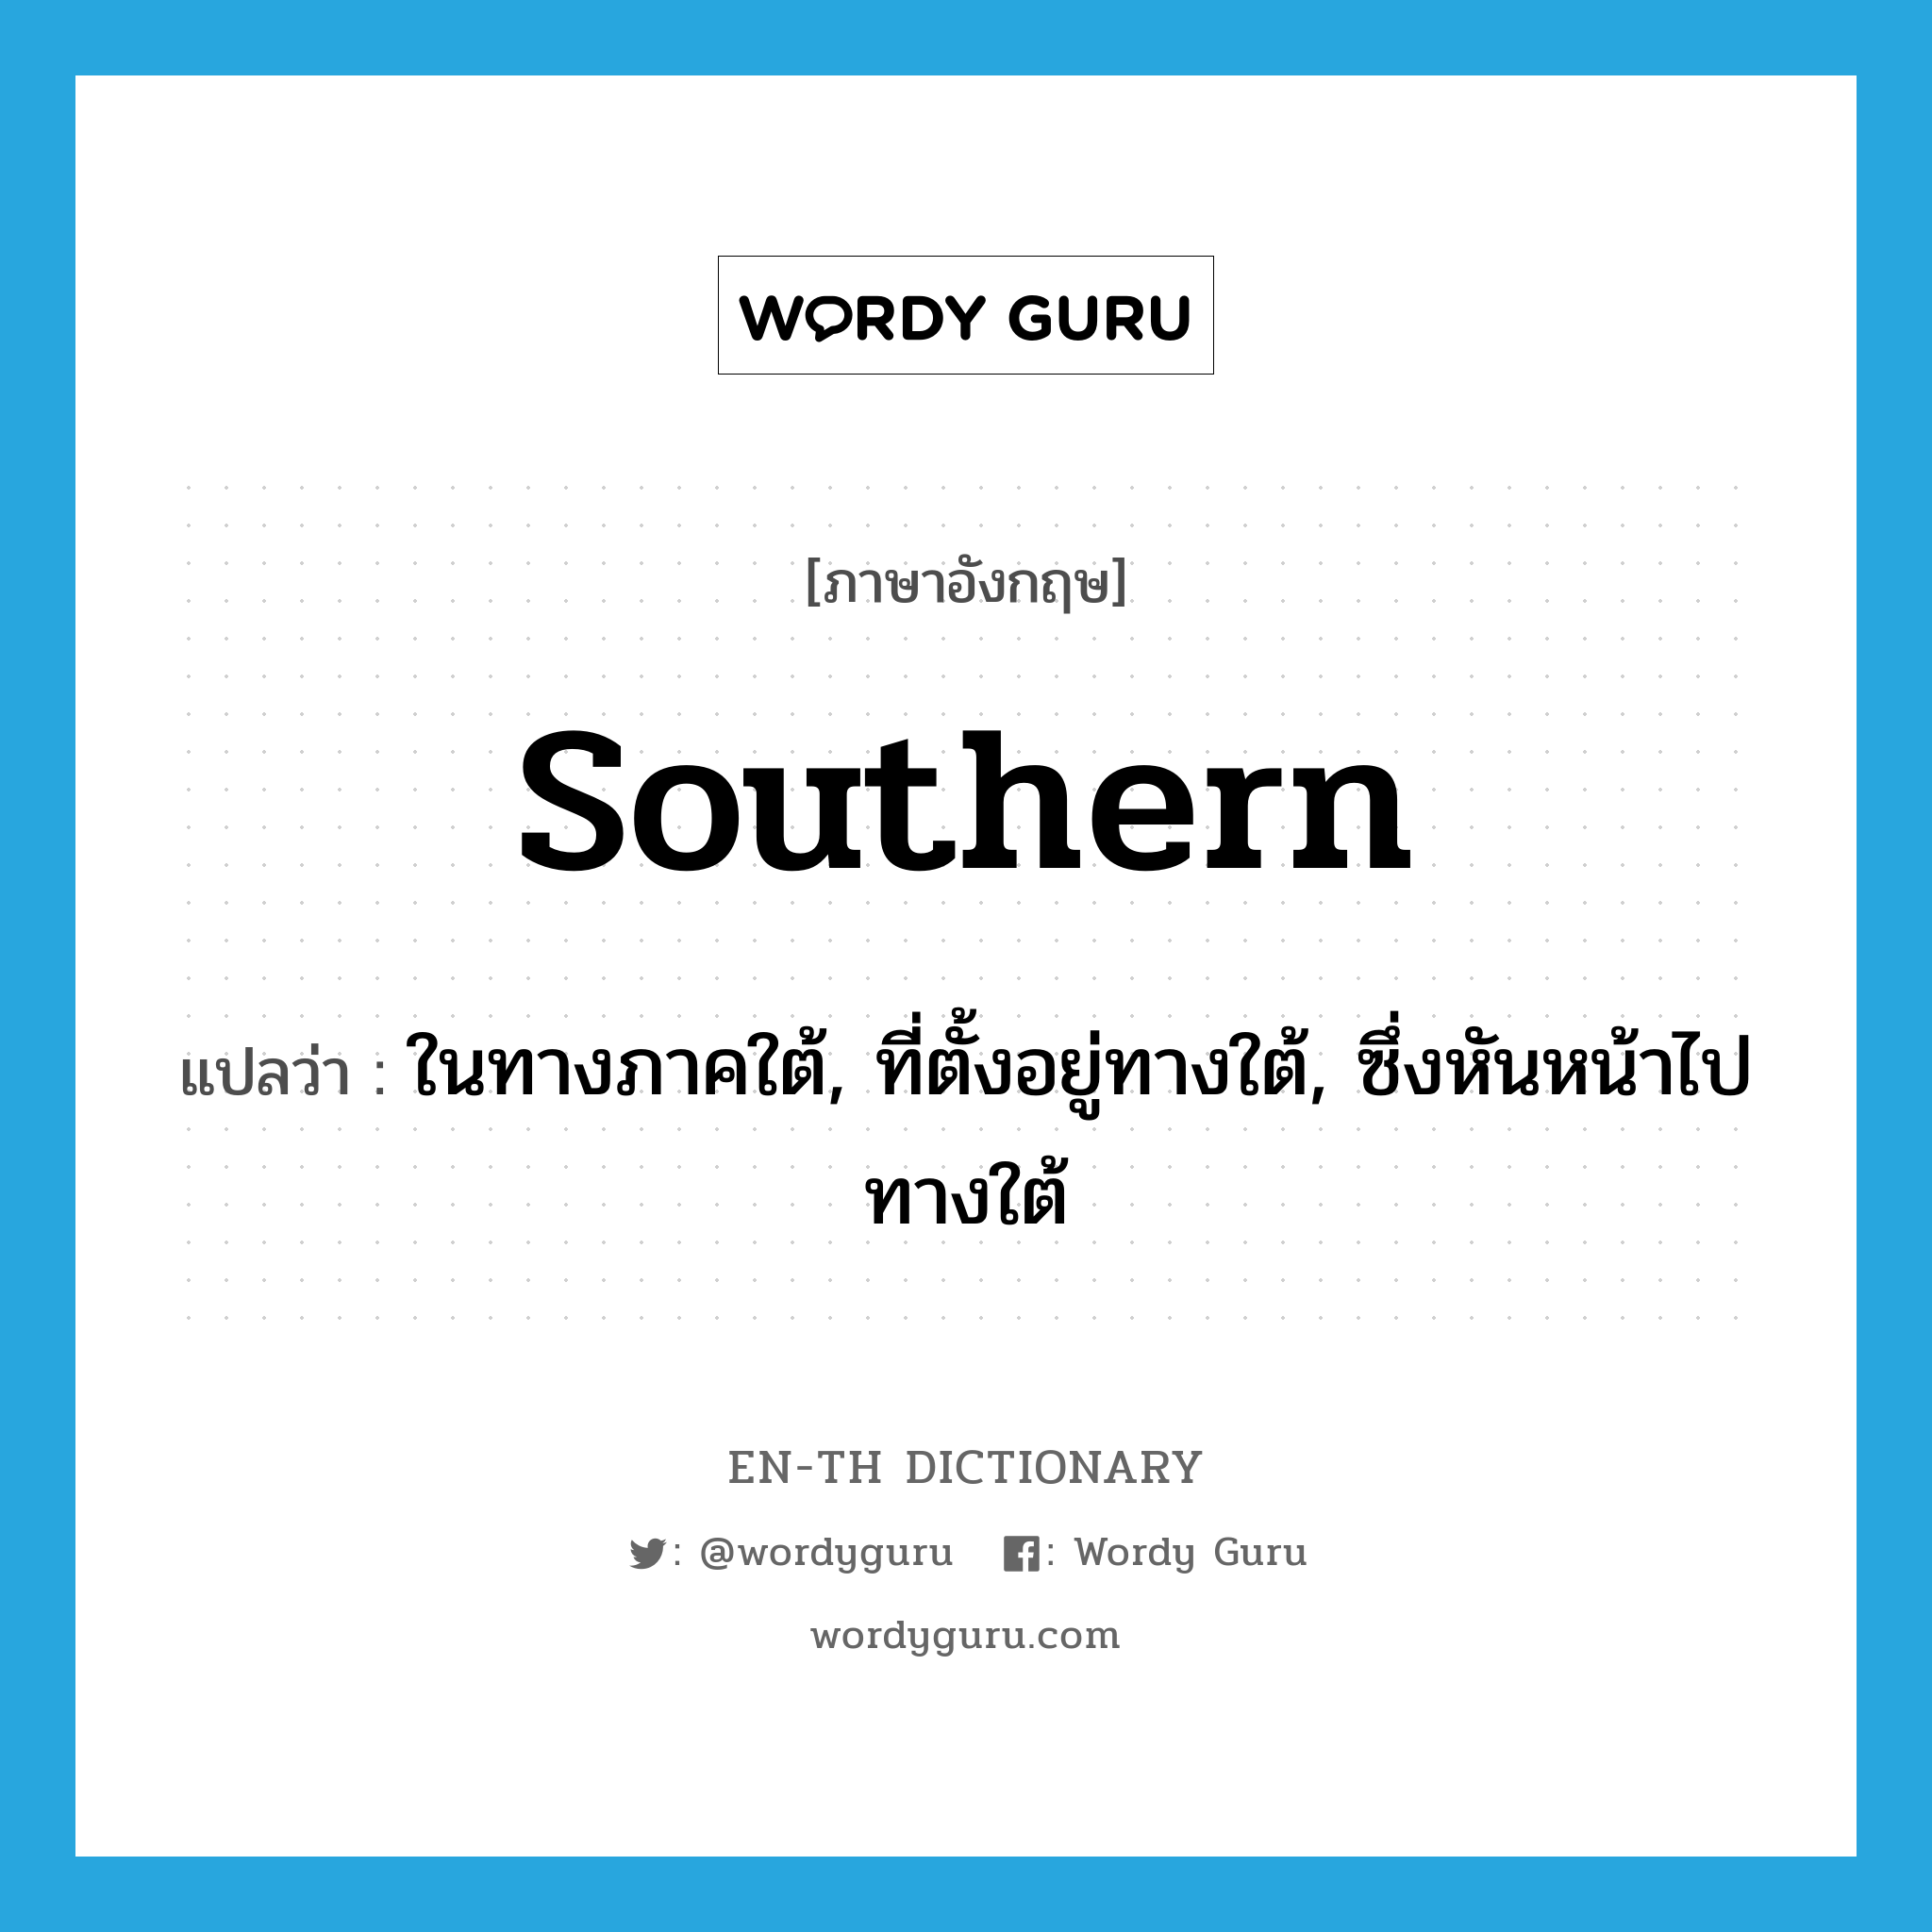 southern แปลว่า?, คำศัพท์ภาษาอังกฤษ southern แปลว่า ในทางภาคใต้, ที่ตั้งอยู่ทางใต้, ซึ่งหันหน้าไปทางใต้ ประเภท ADJ หมวด ADJ